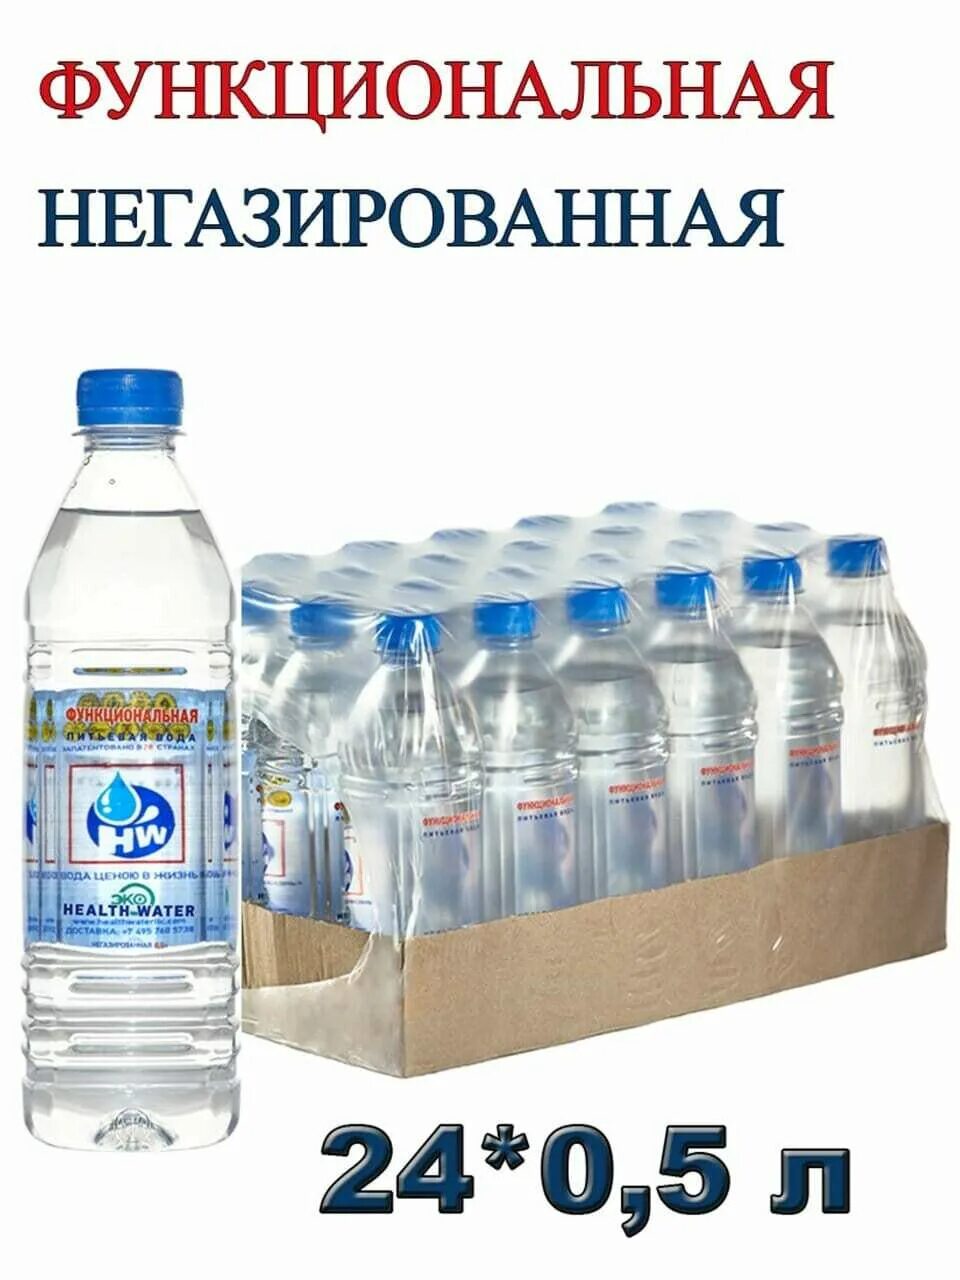 Функциональная питьевая вода. Функциональная вода Health Water. Питьевая вода Московская область. Вода питьевая Читинская.